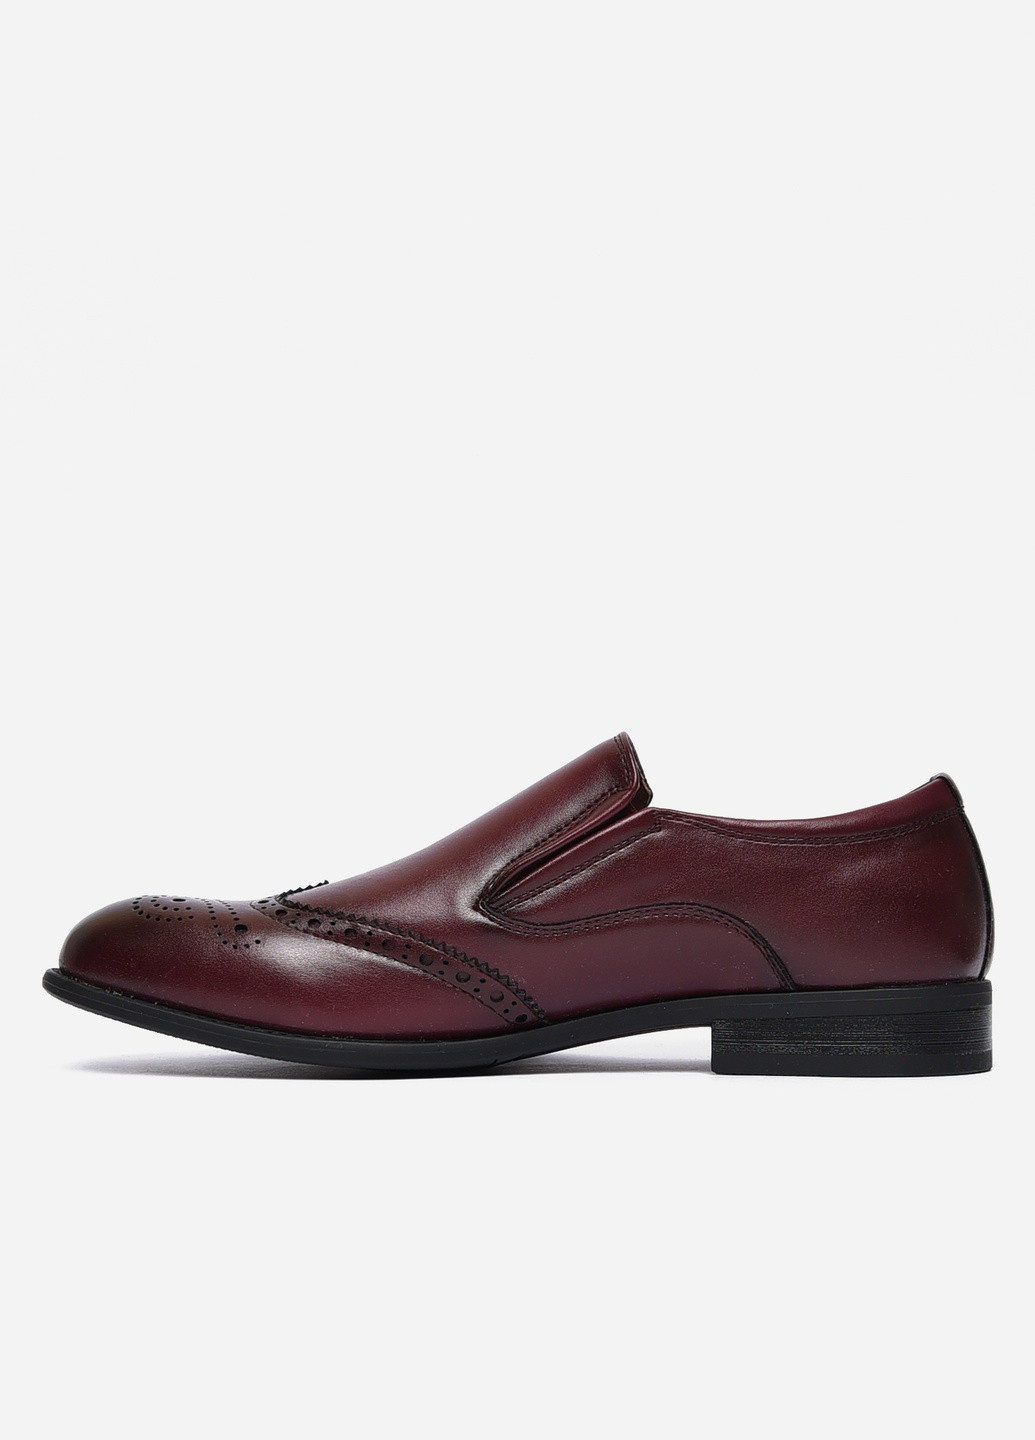 Бордовые классические туфли мужские бордового цвета Let's Shop без шнурков